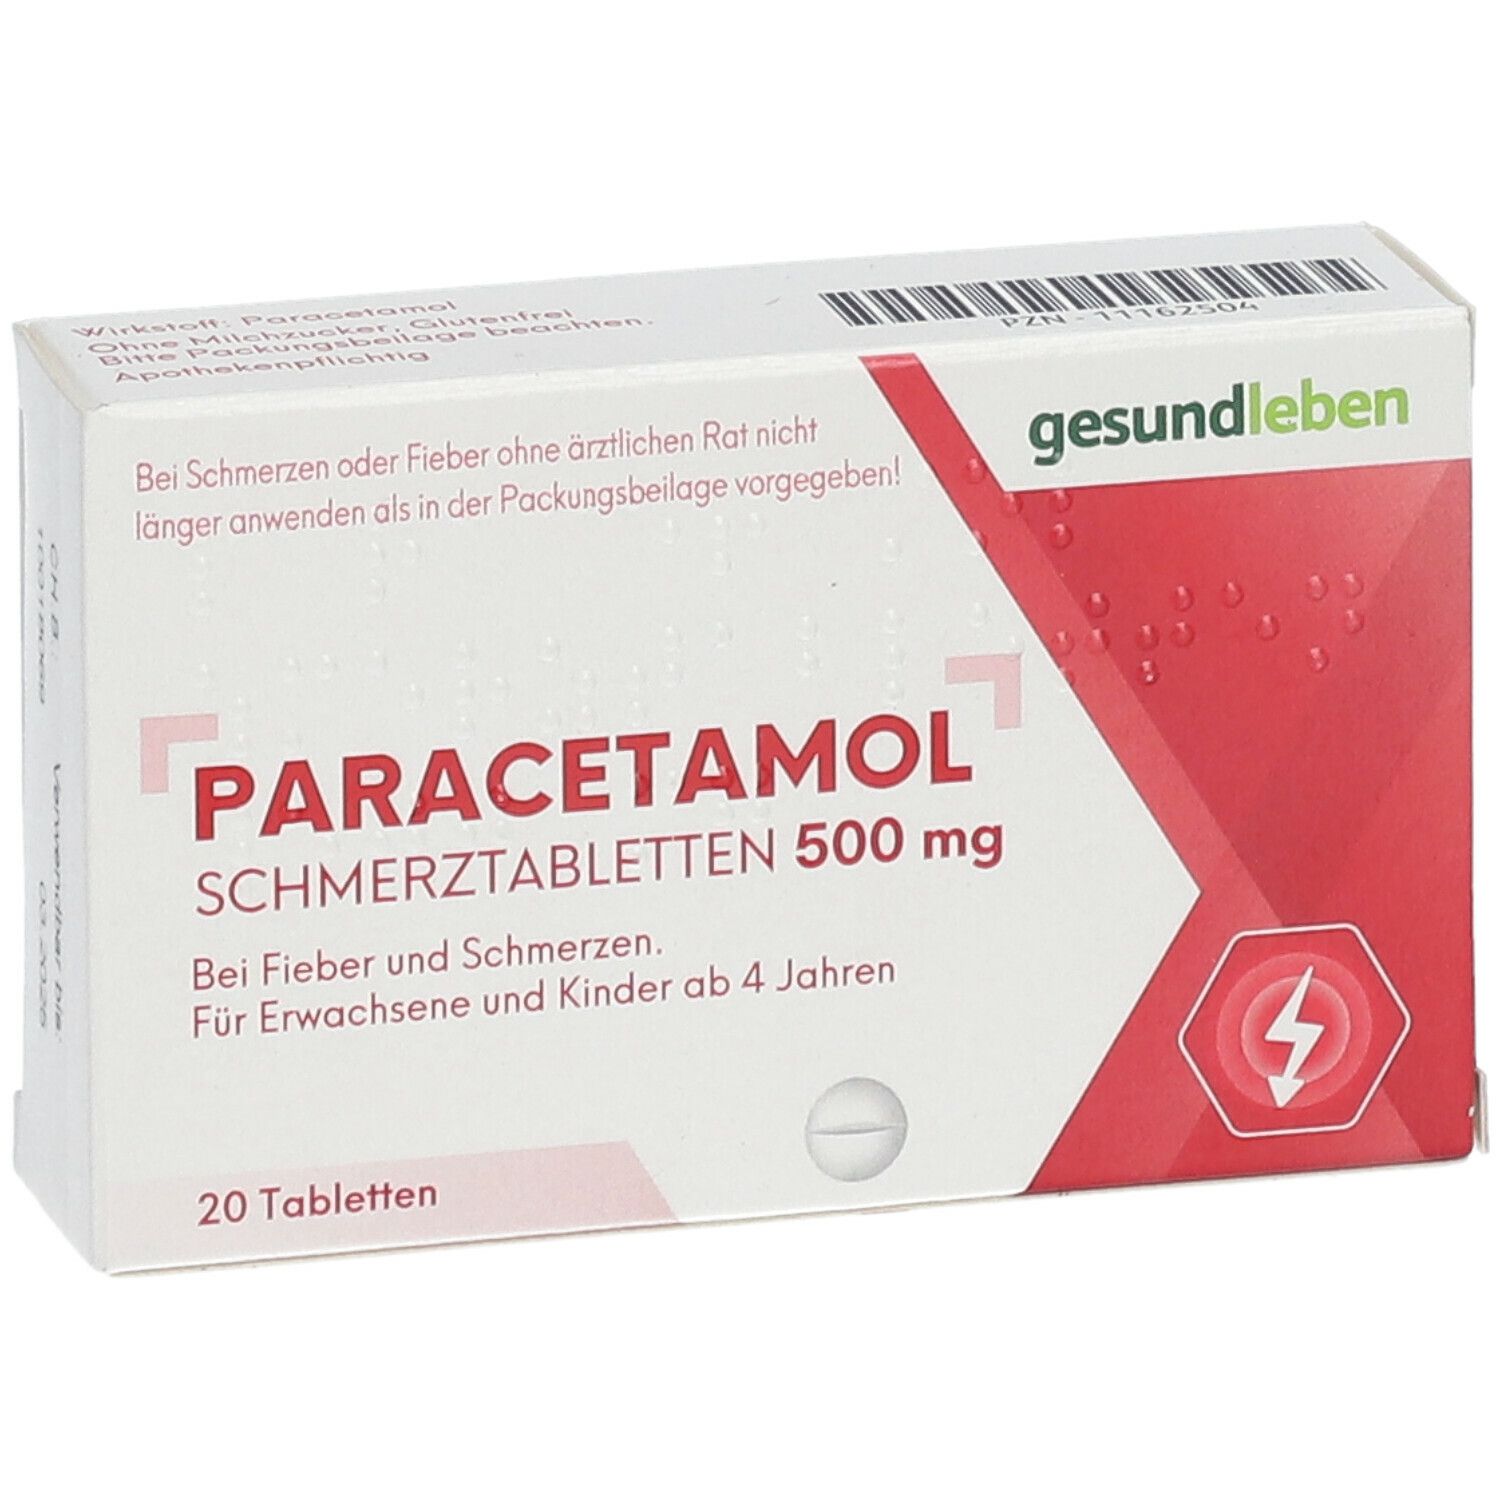 gesundleben Paracetamol Schmerztabletten 500 mg